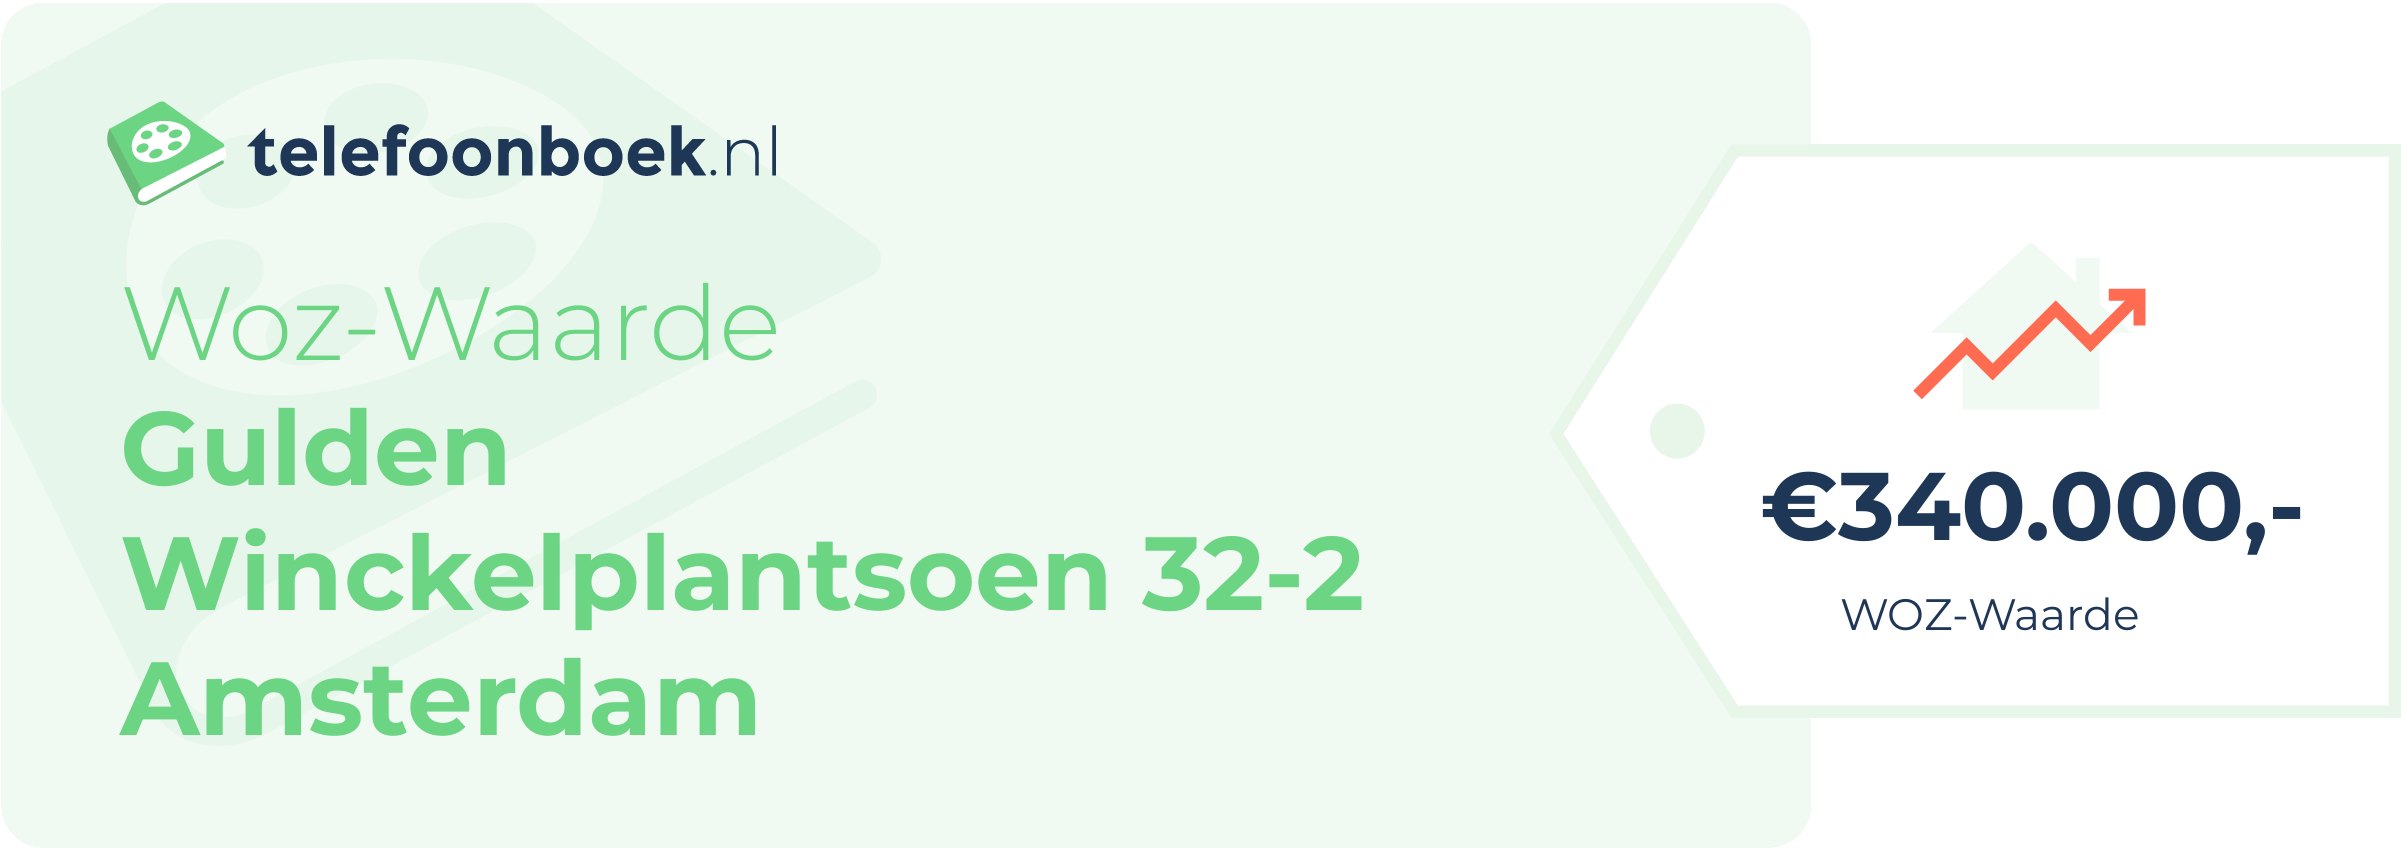 WOZ-waarde Gulden Winckelplantsoen 32-2 Amsterdam